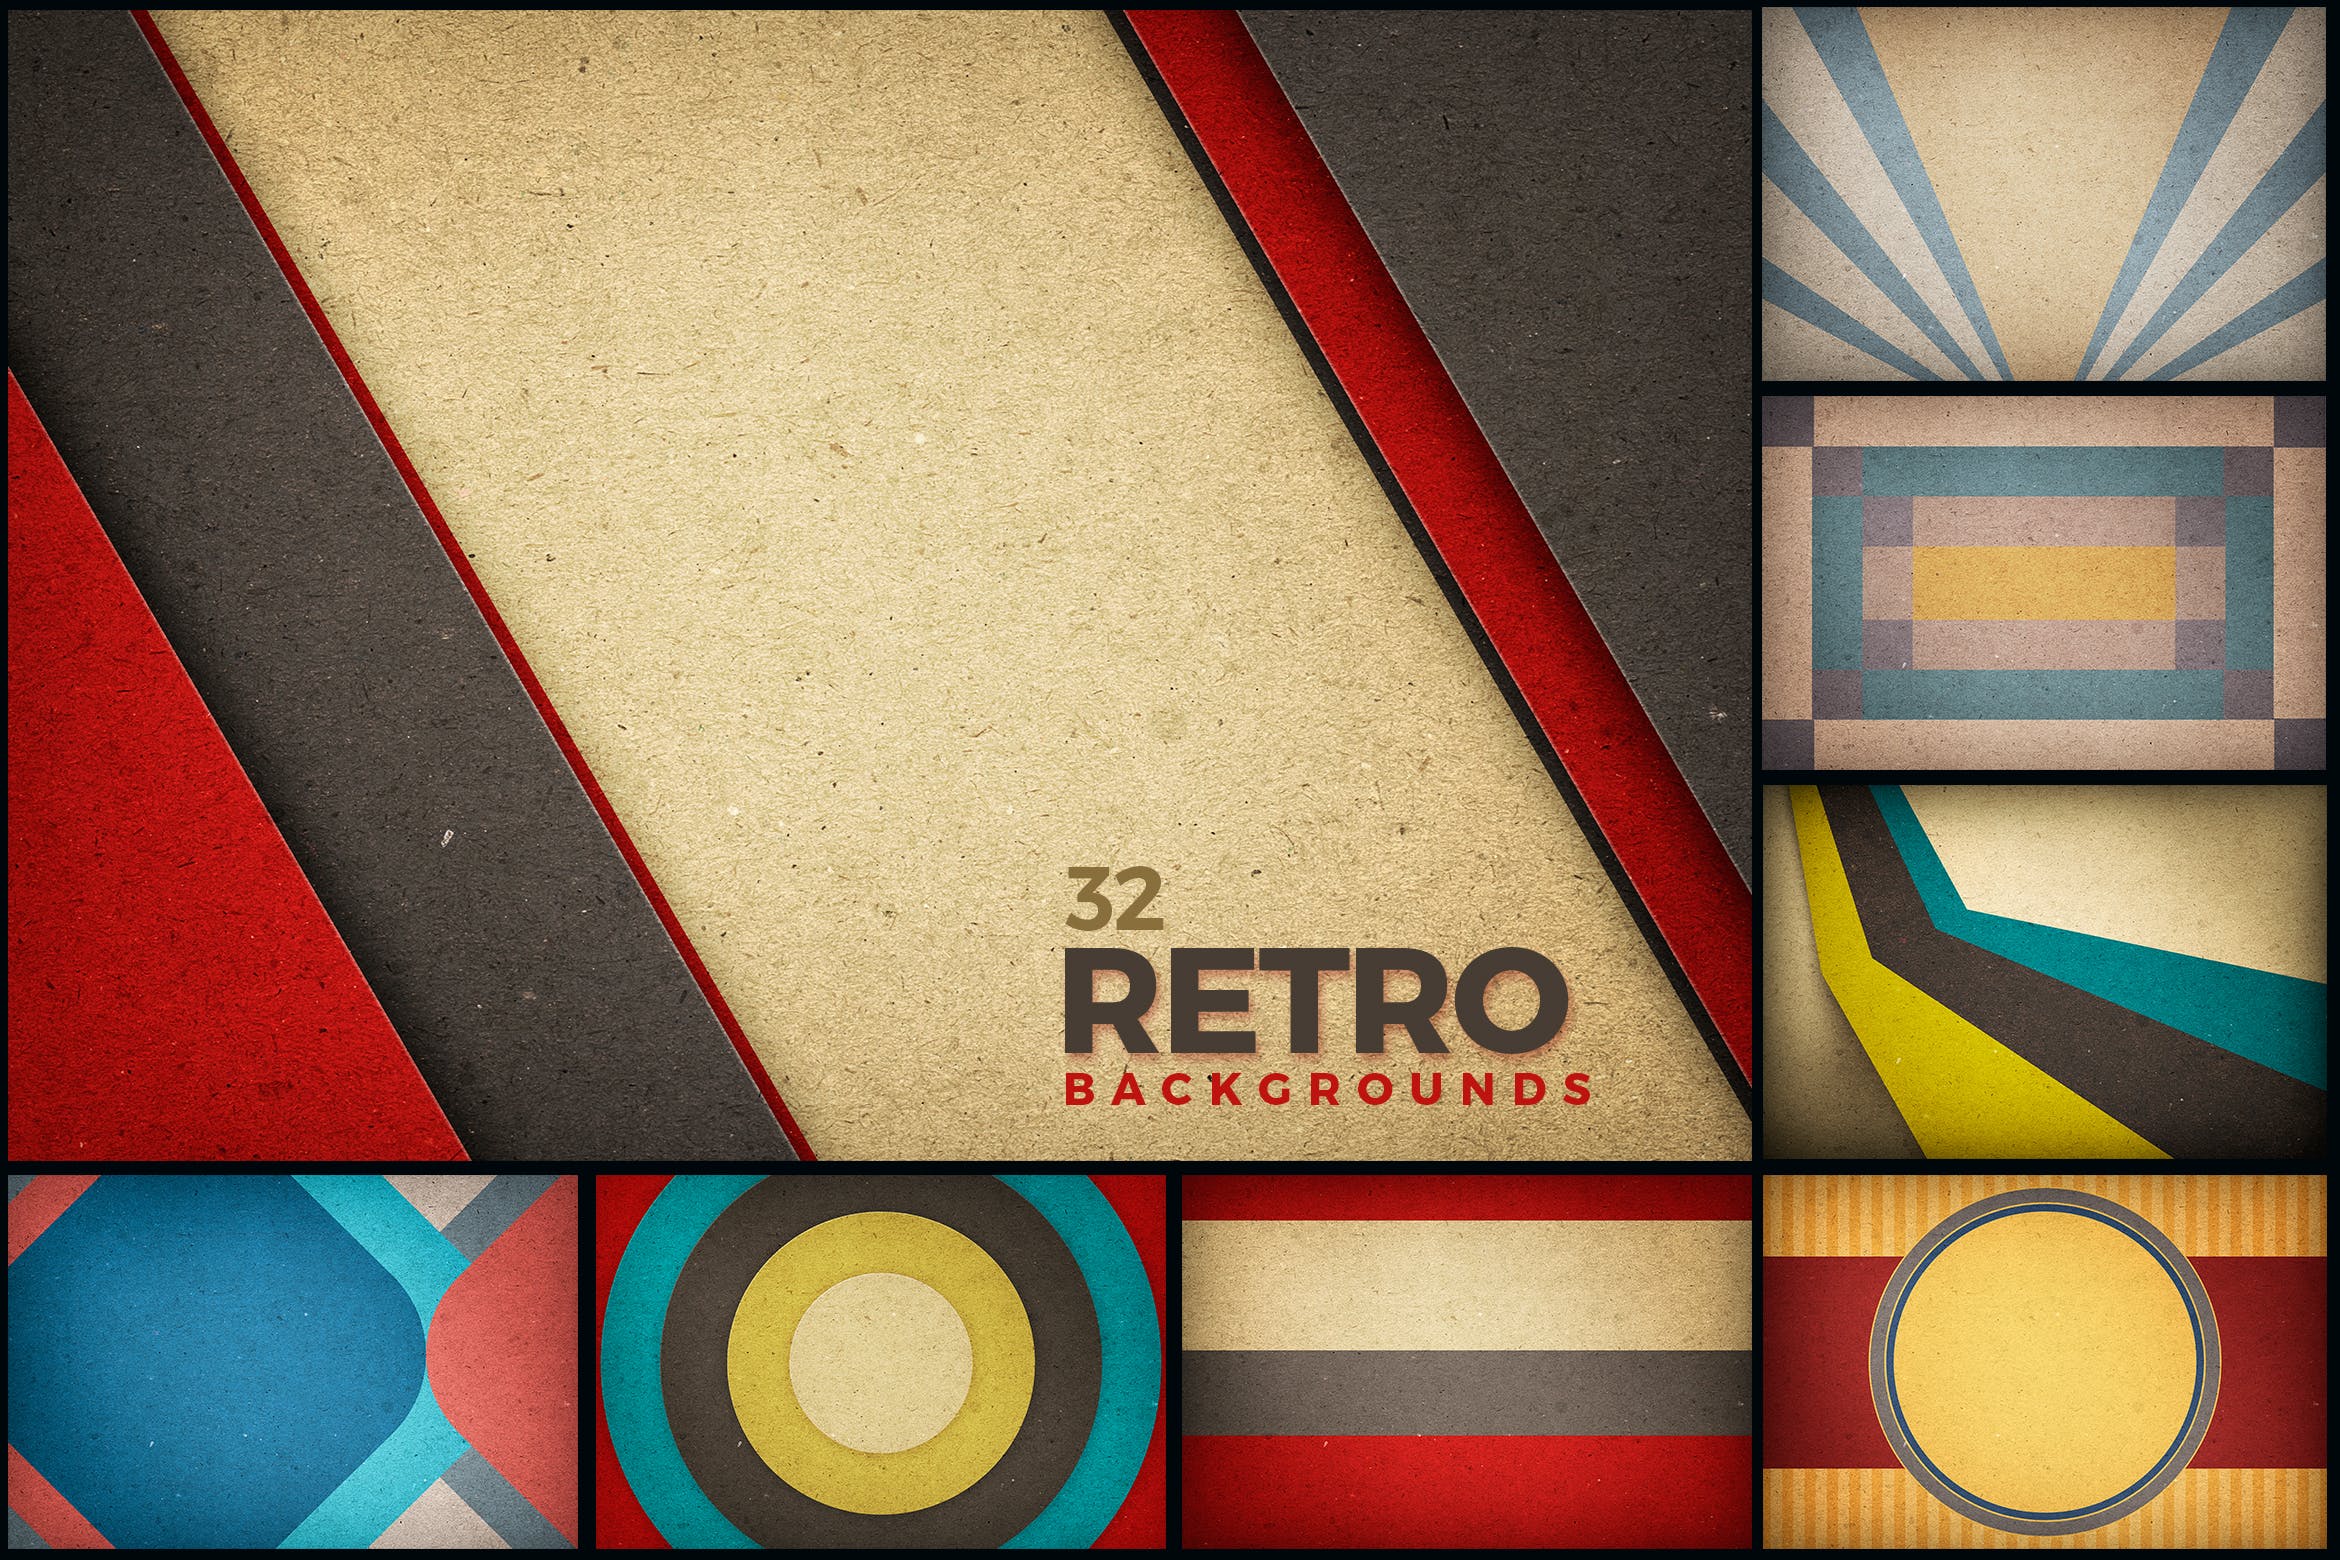 复古几何形状纸纹背景素材 Retro Backgrounds 图片素材 第1张